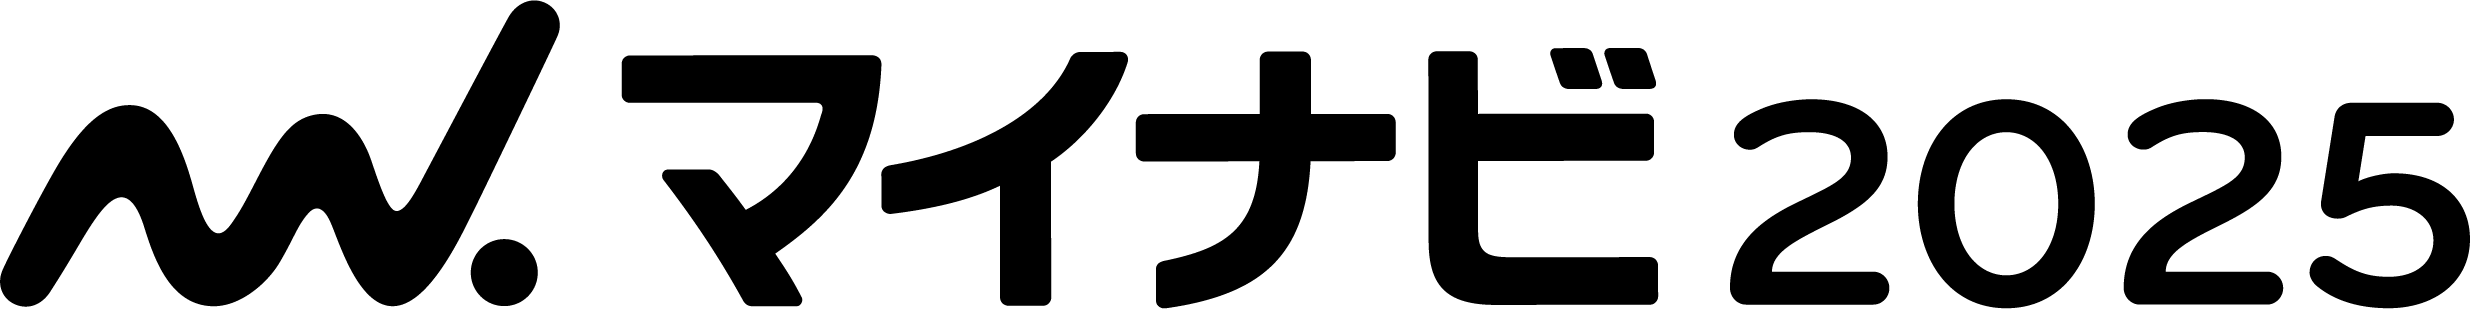 マイナビのロゴ